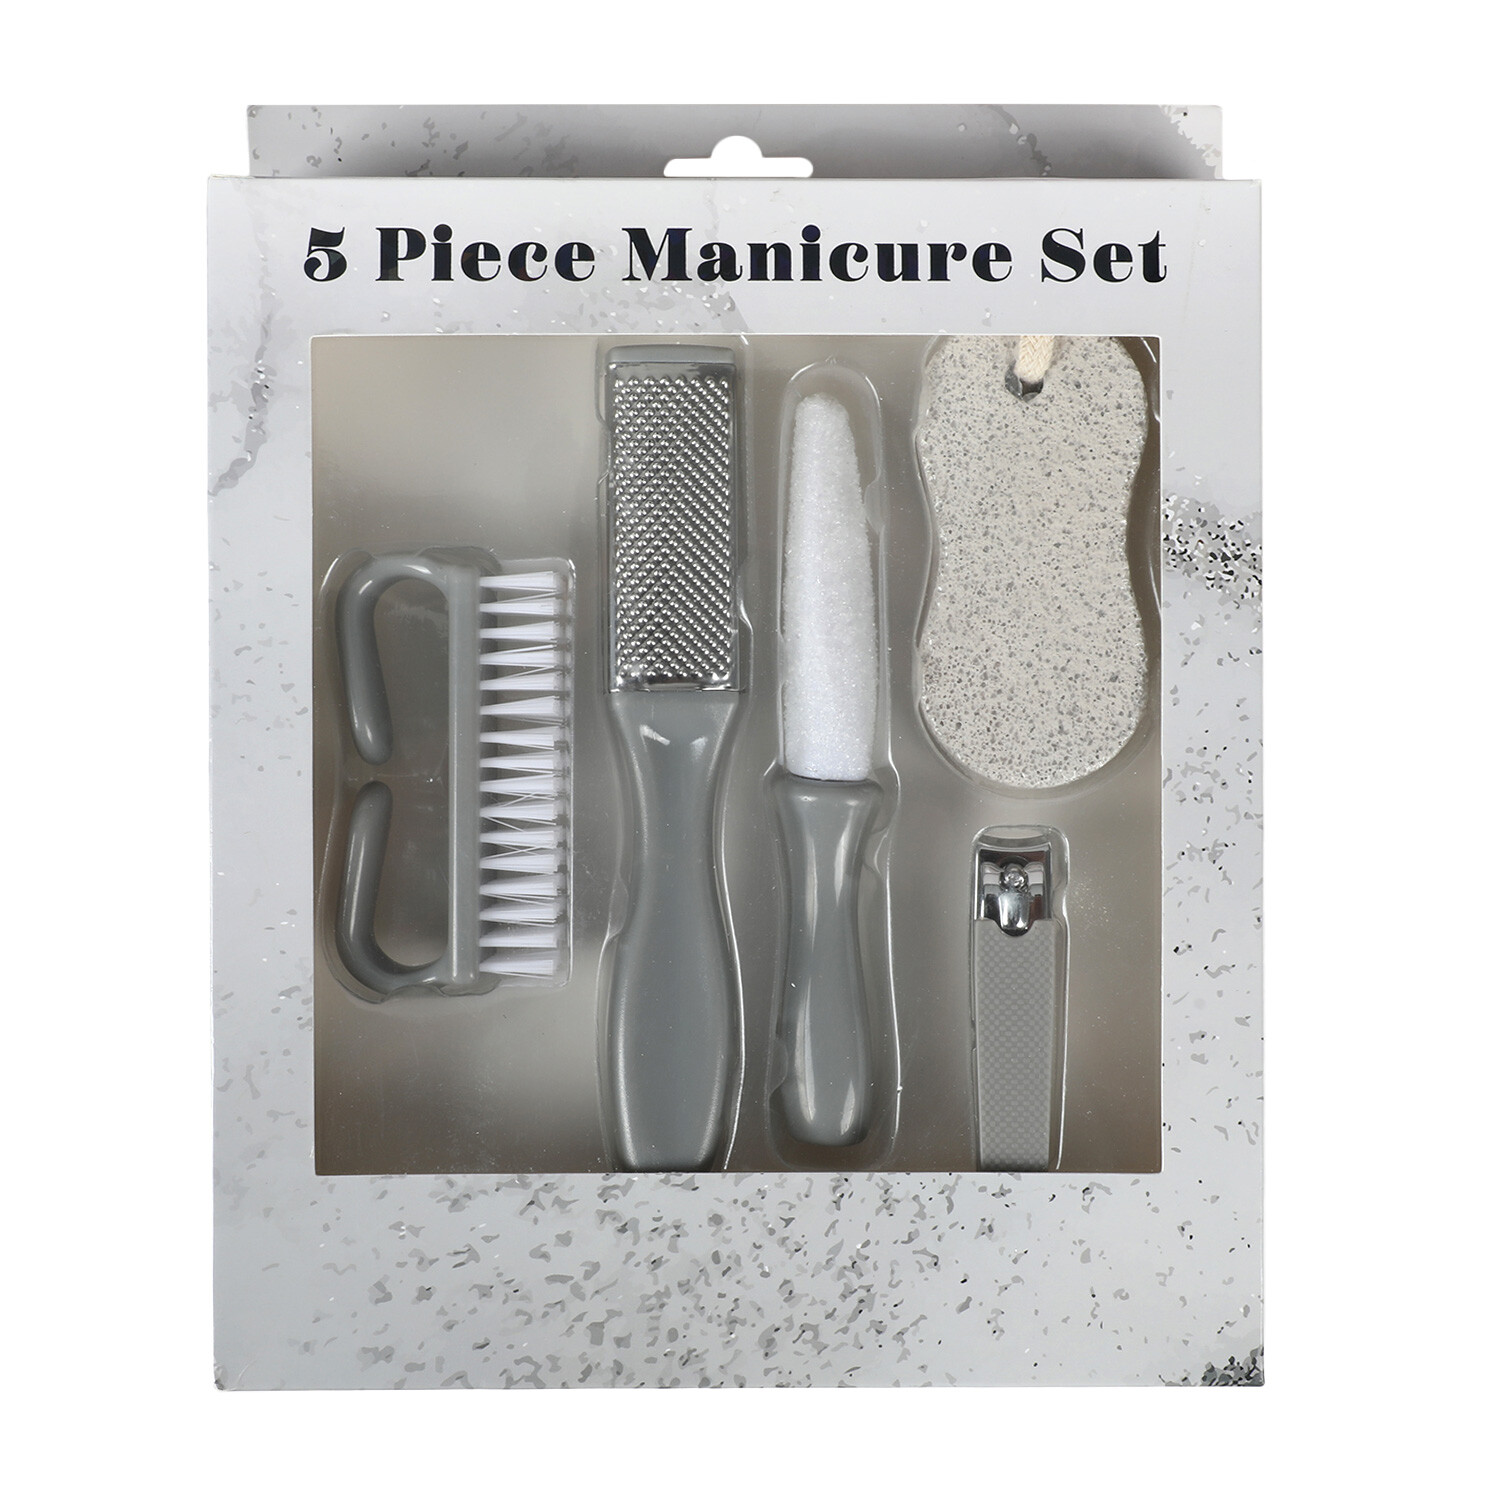 5-Piece Manicure Set - Grey Image